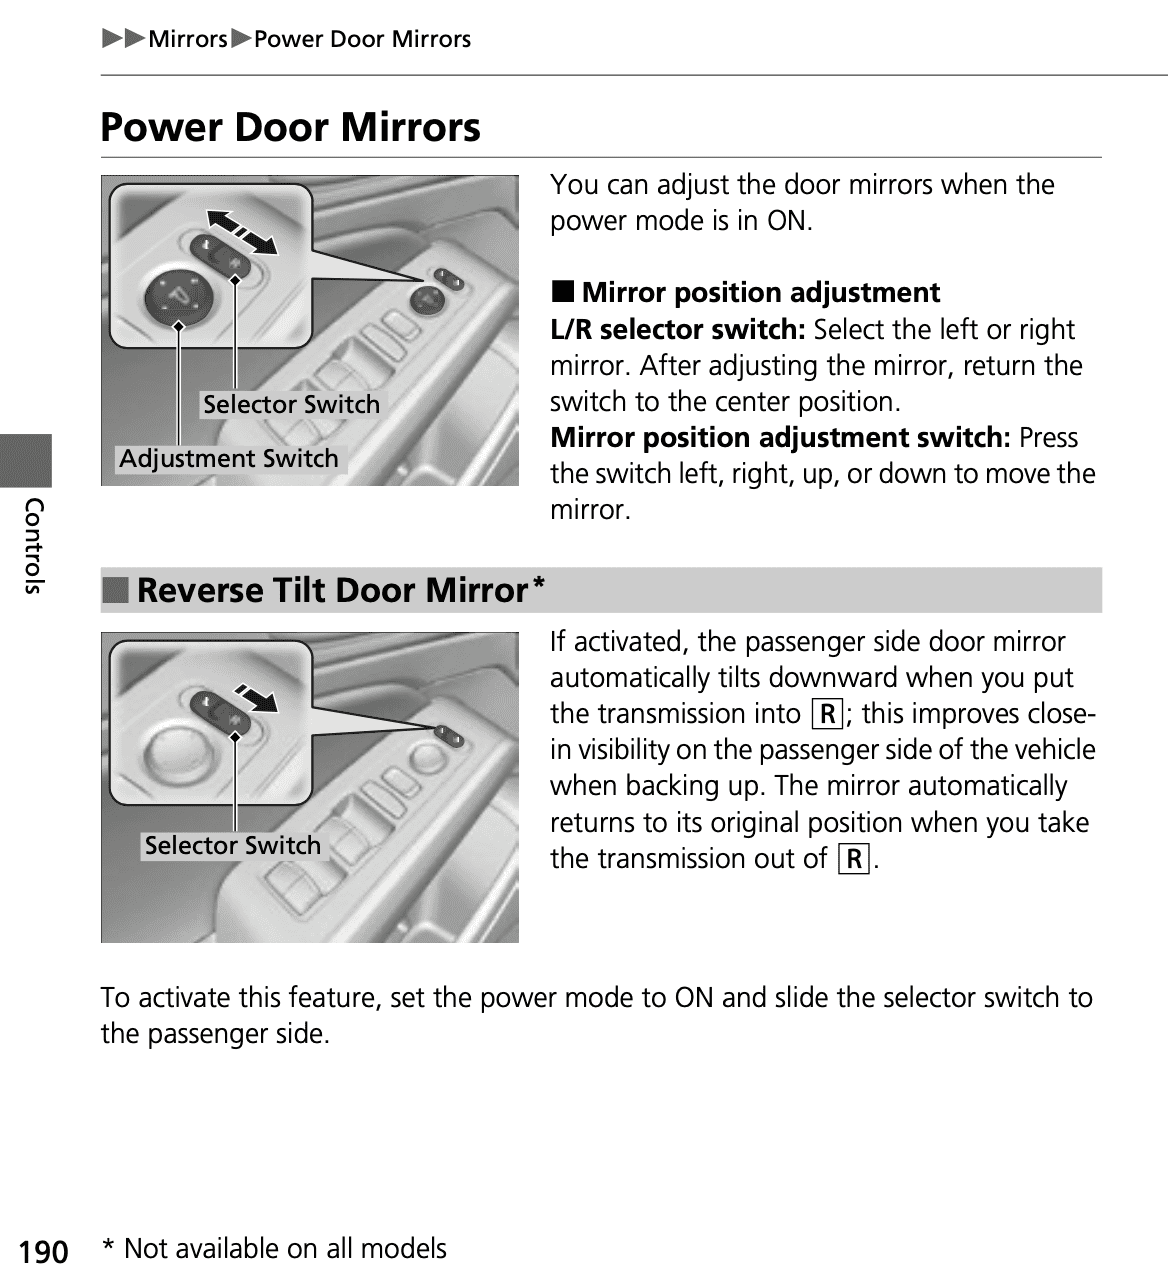 Reverse Tilt Door Mirrors(*1)